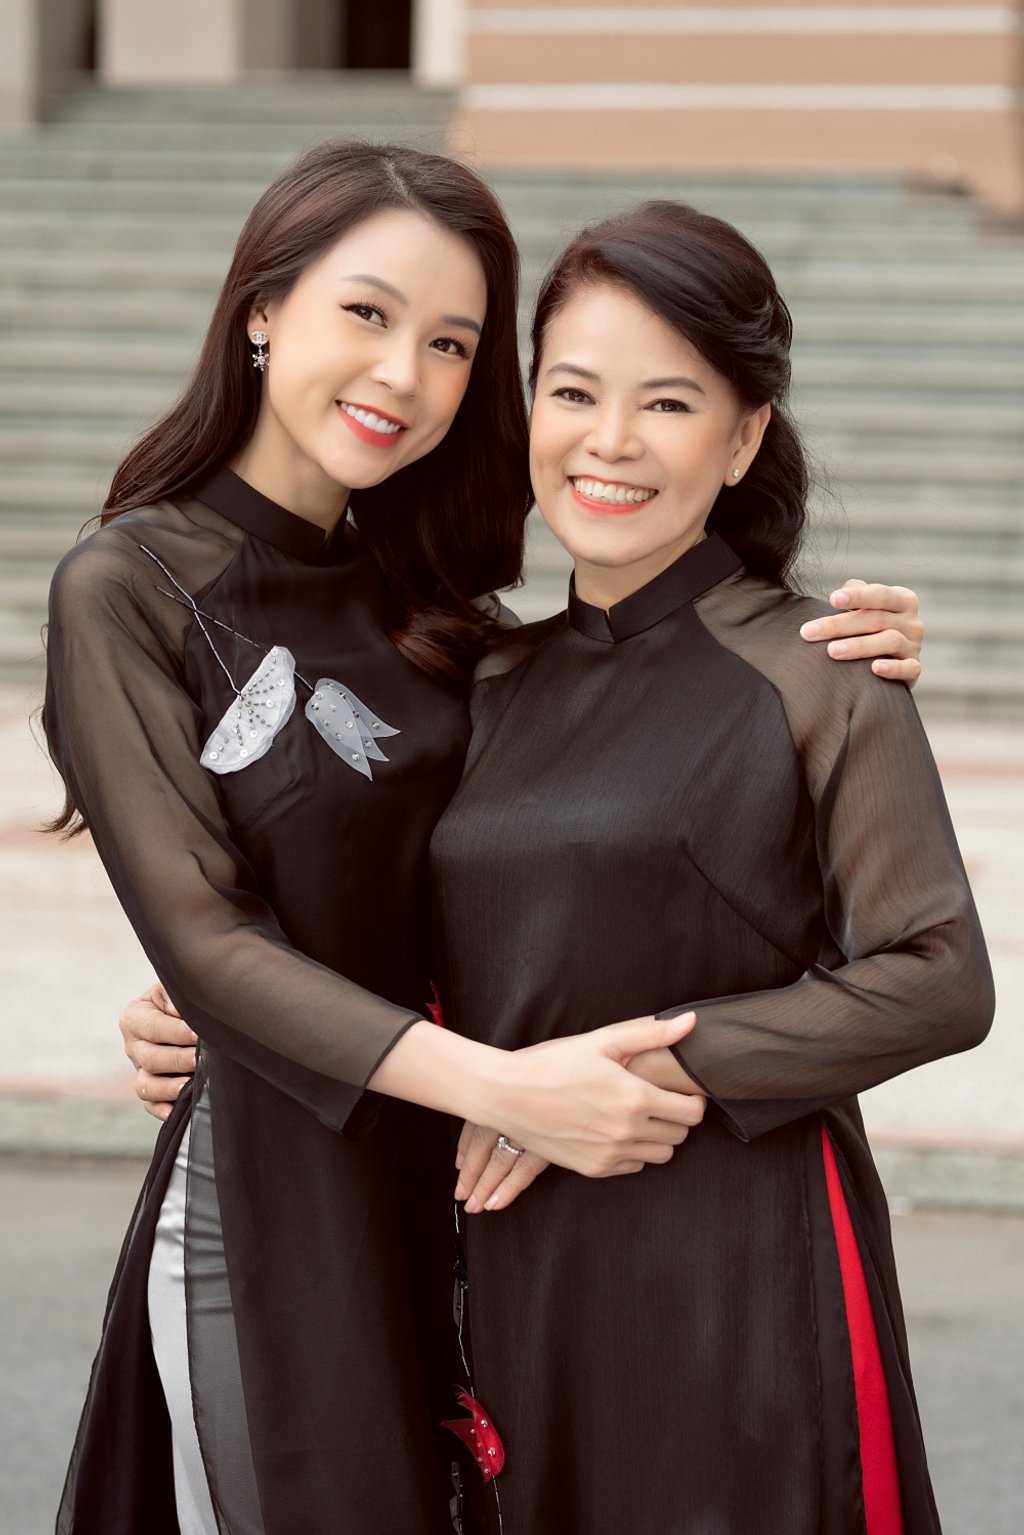 Bộ áo dài mang gam màu đen được tô điểm hoa văn hoa sen dịu dàng bằng thanh ngọc khiết càng giúp hình ảnh của hai mẹ con thêm phần duyên dáng, ngọt ngào.